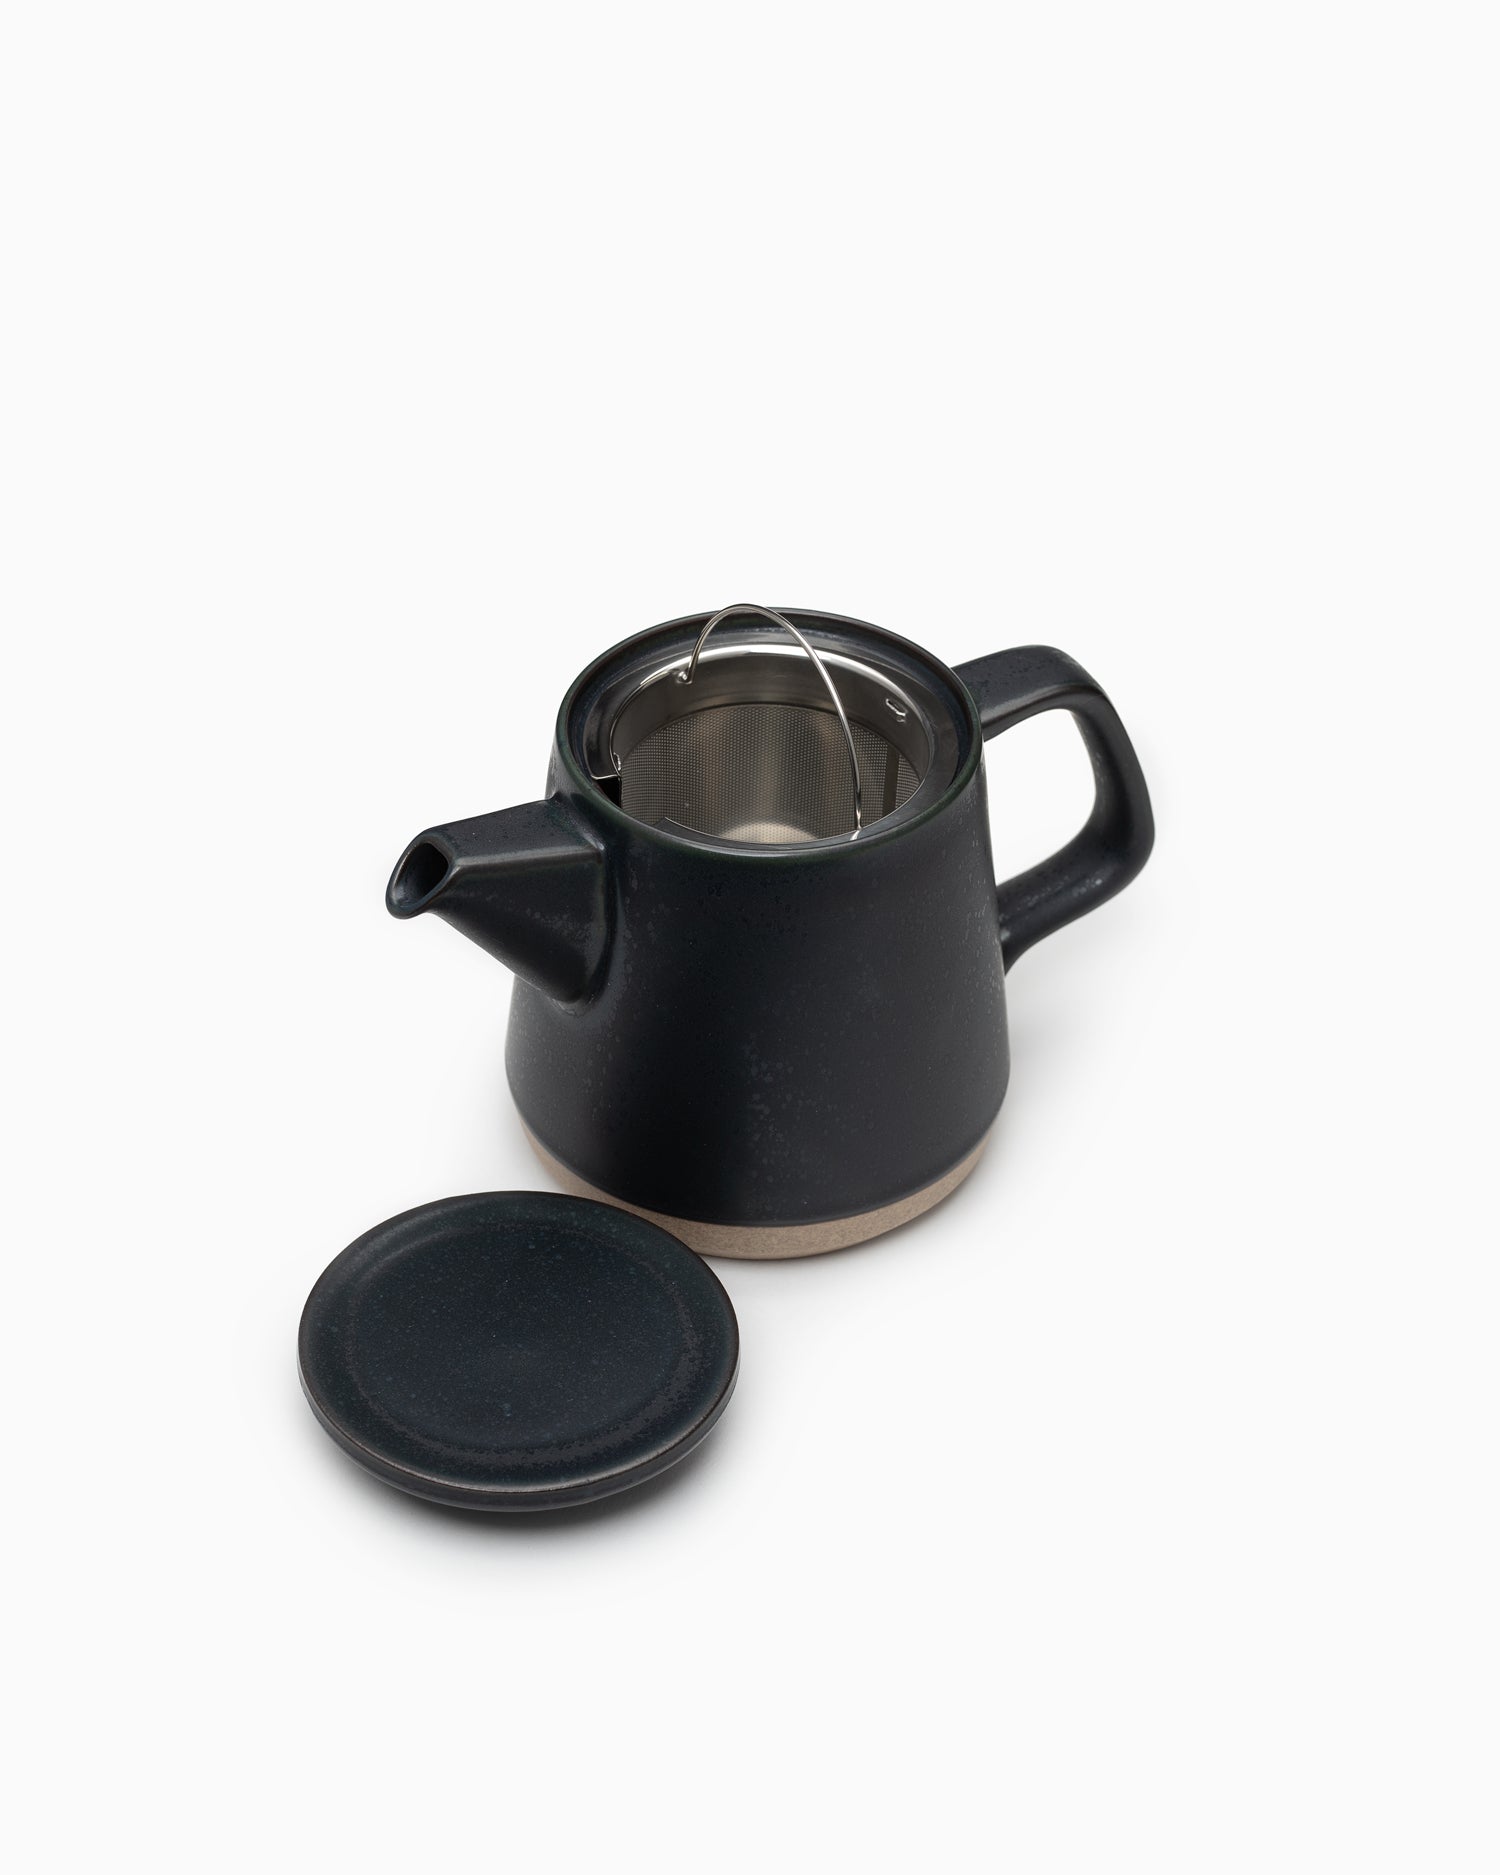 CLK-151 Teapot 500ml Black